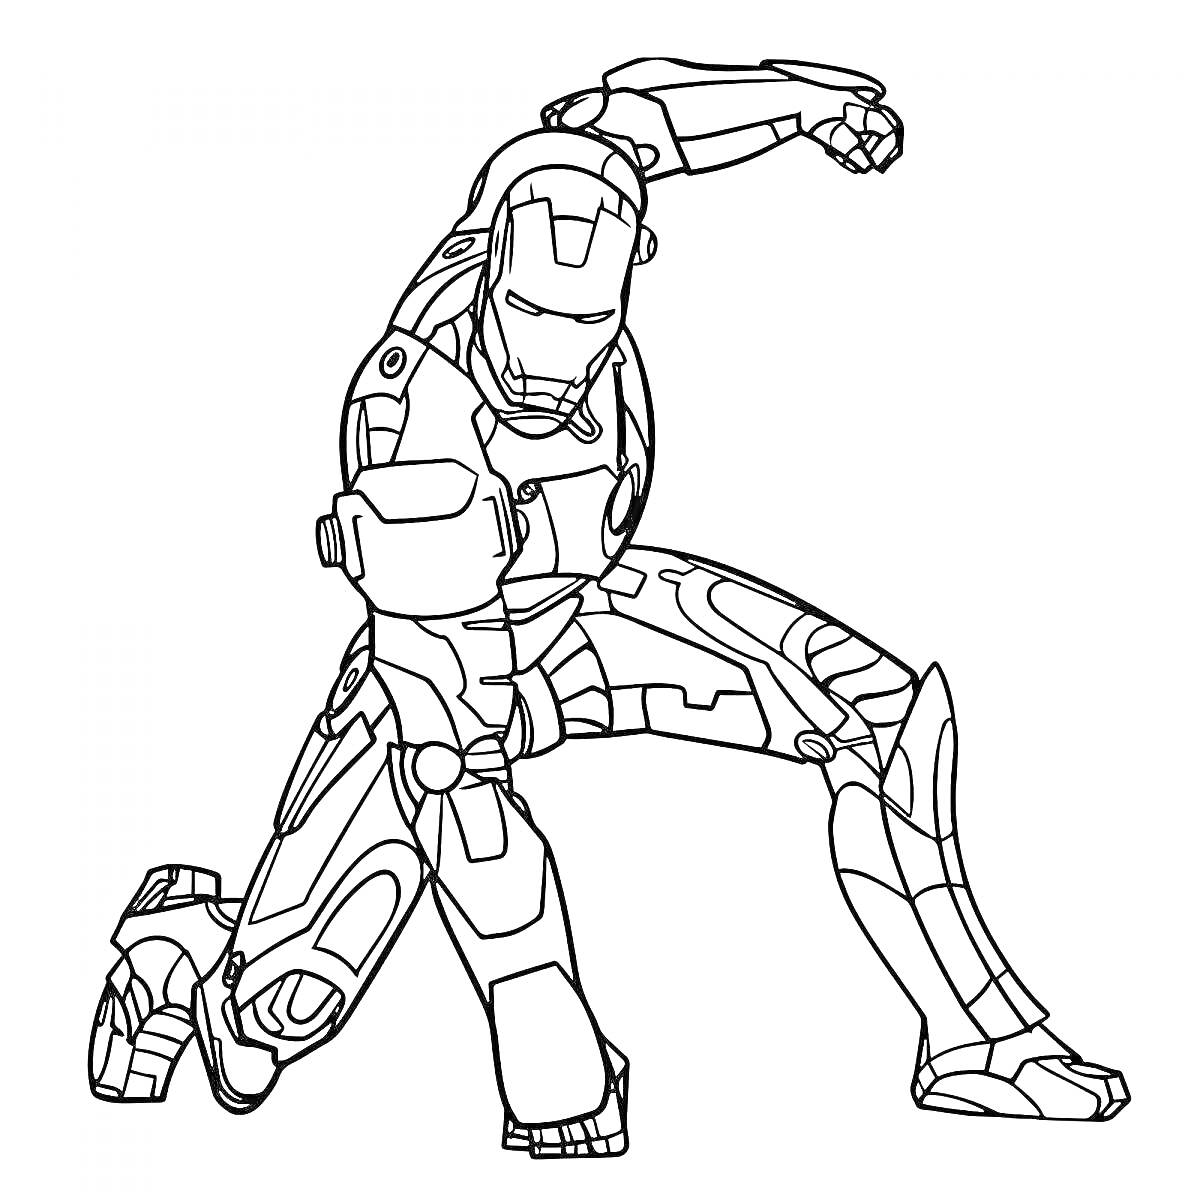 Раскраска Робот в боевой позе с поднятой рукой над головой и оружием на правой руке